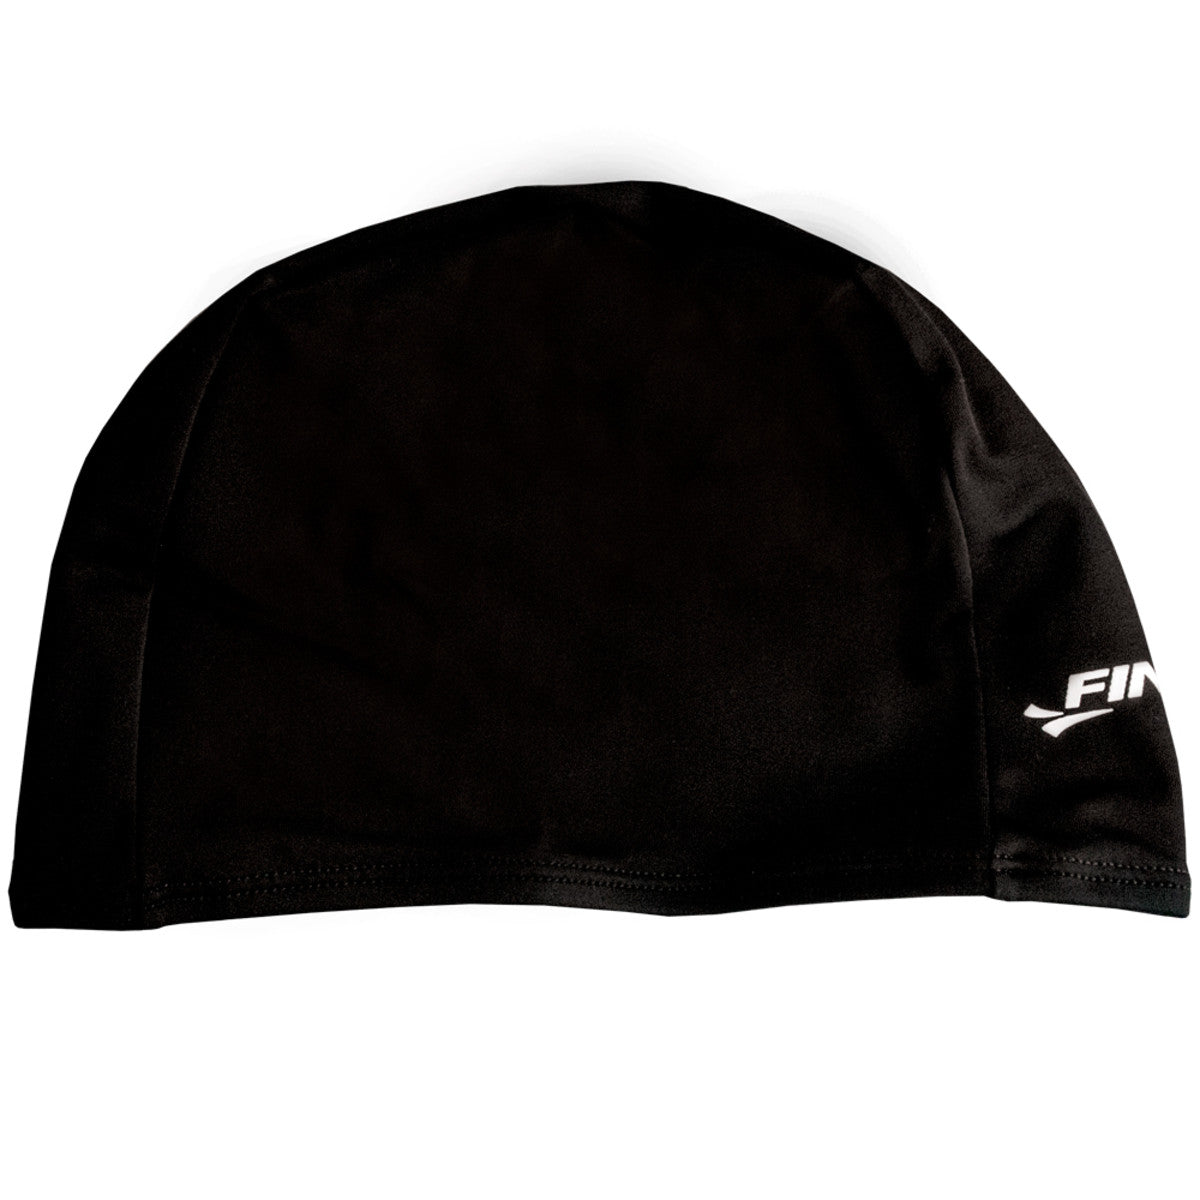 Finis Soft Spandex Swim Cap - Black